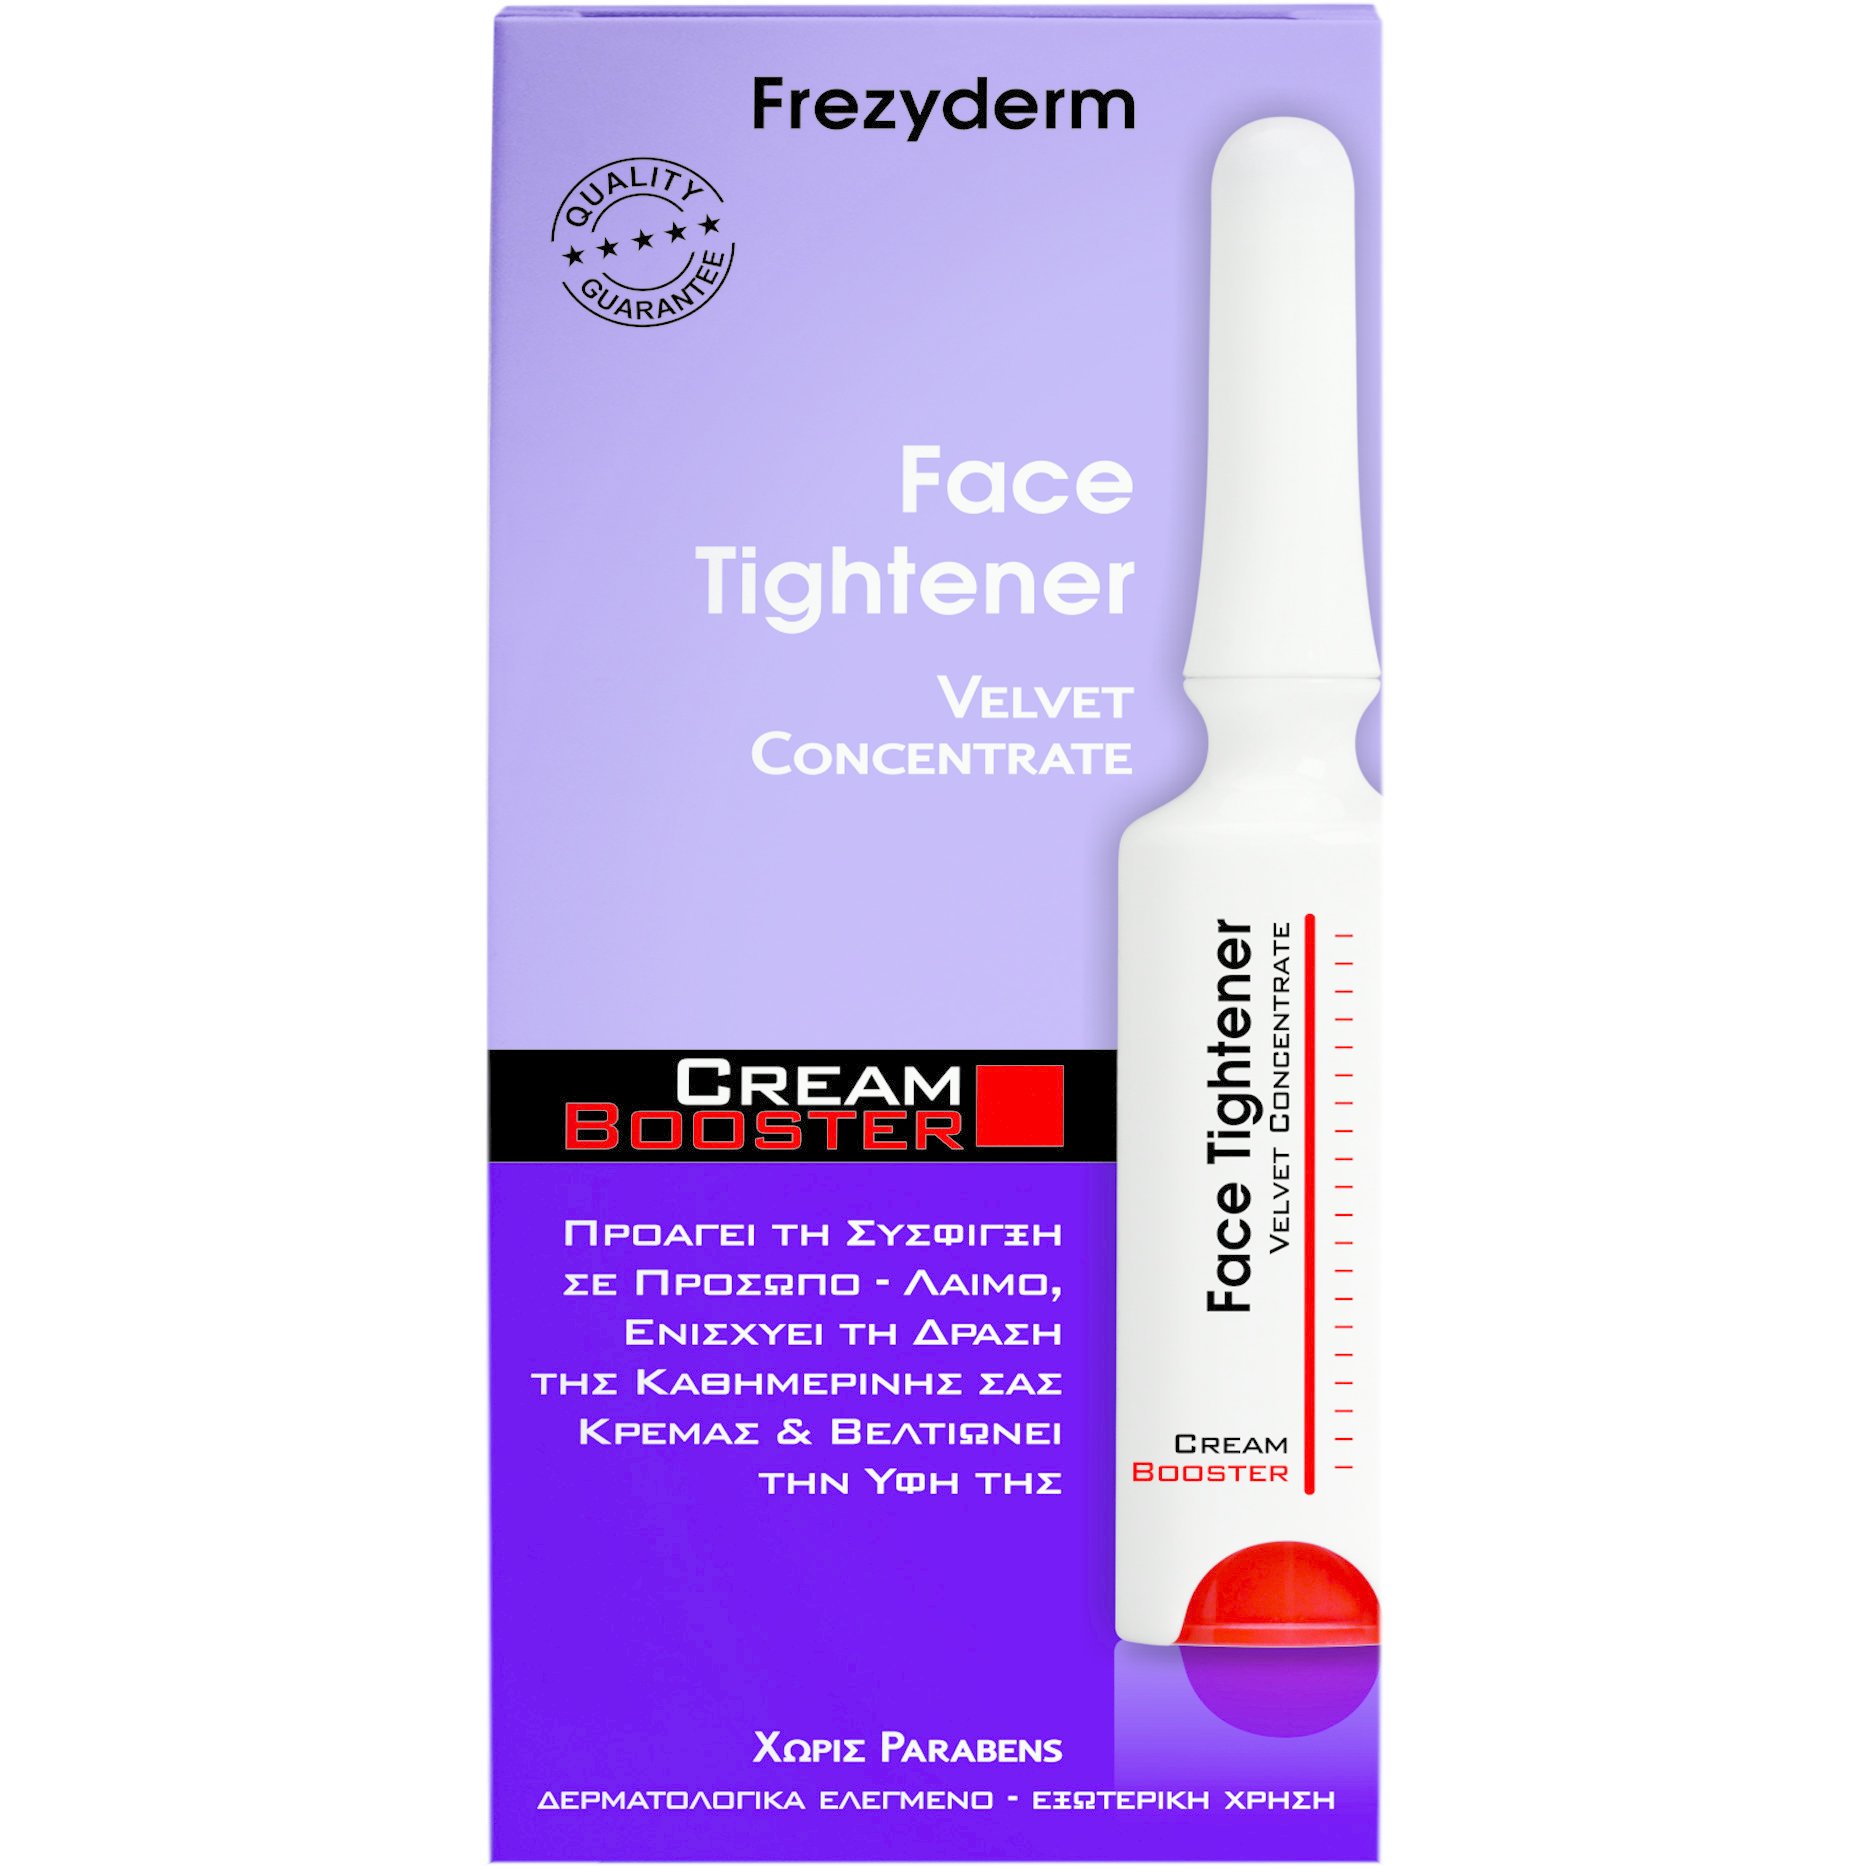 Frezyderm Face Tightener Cream Booster για Μείωση της Χαλάρωσης 5ml